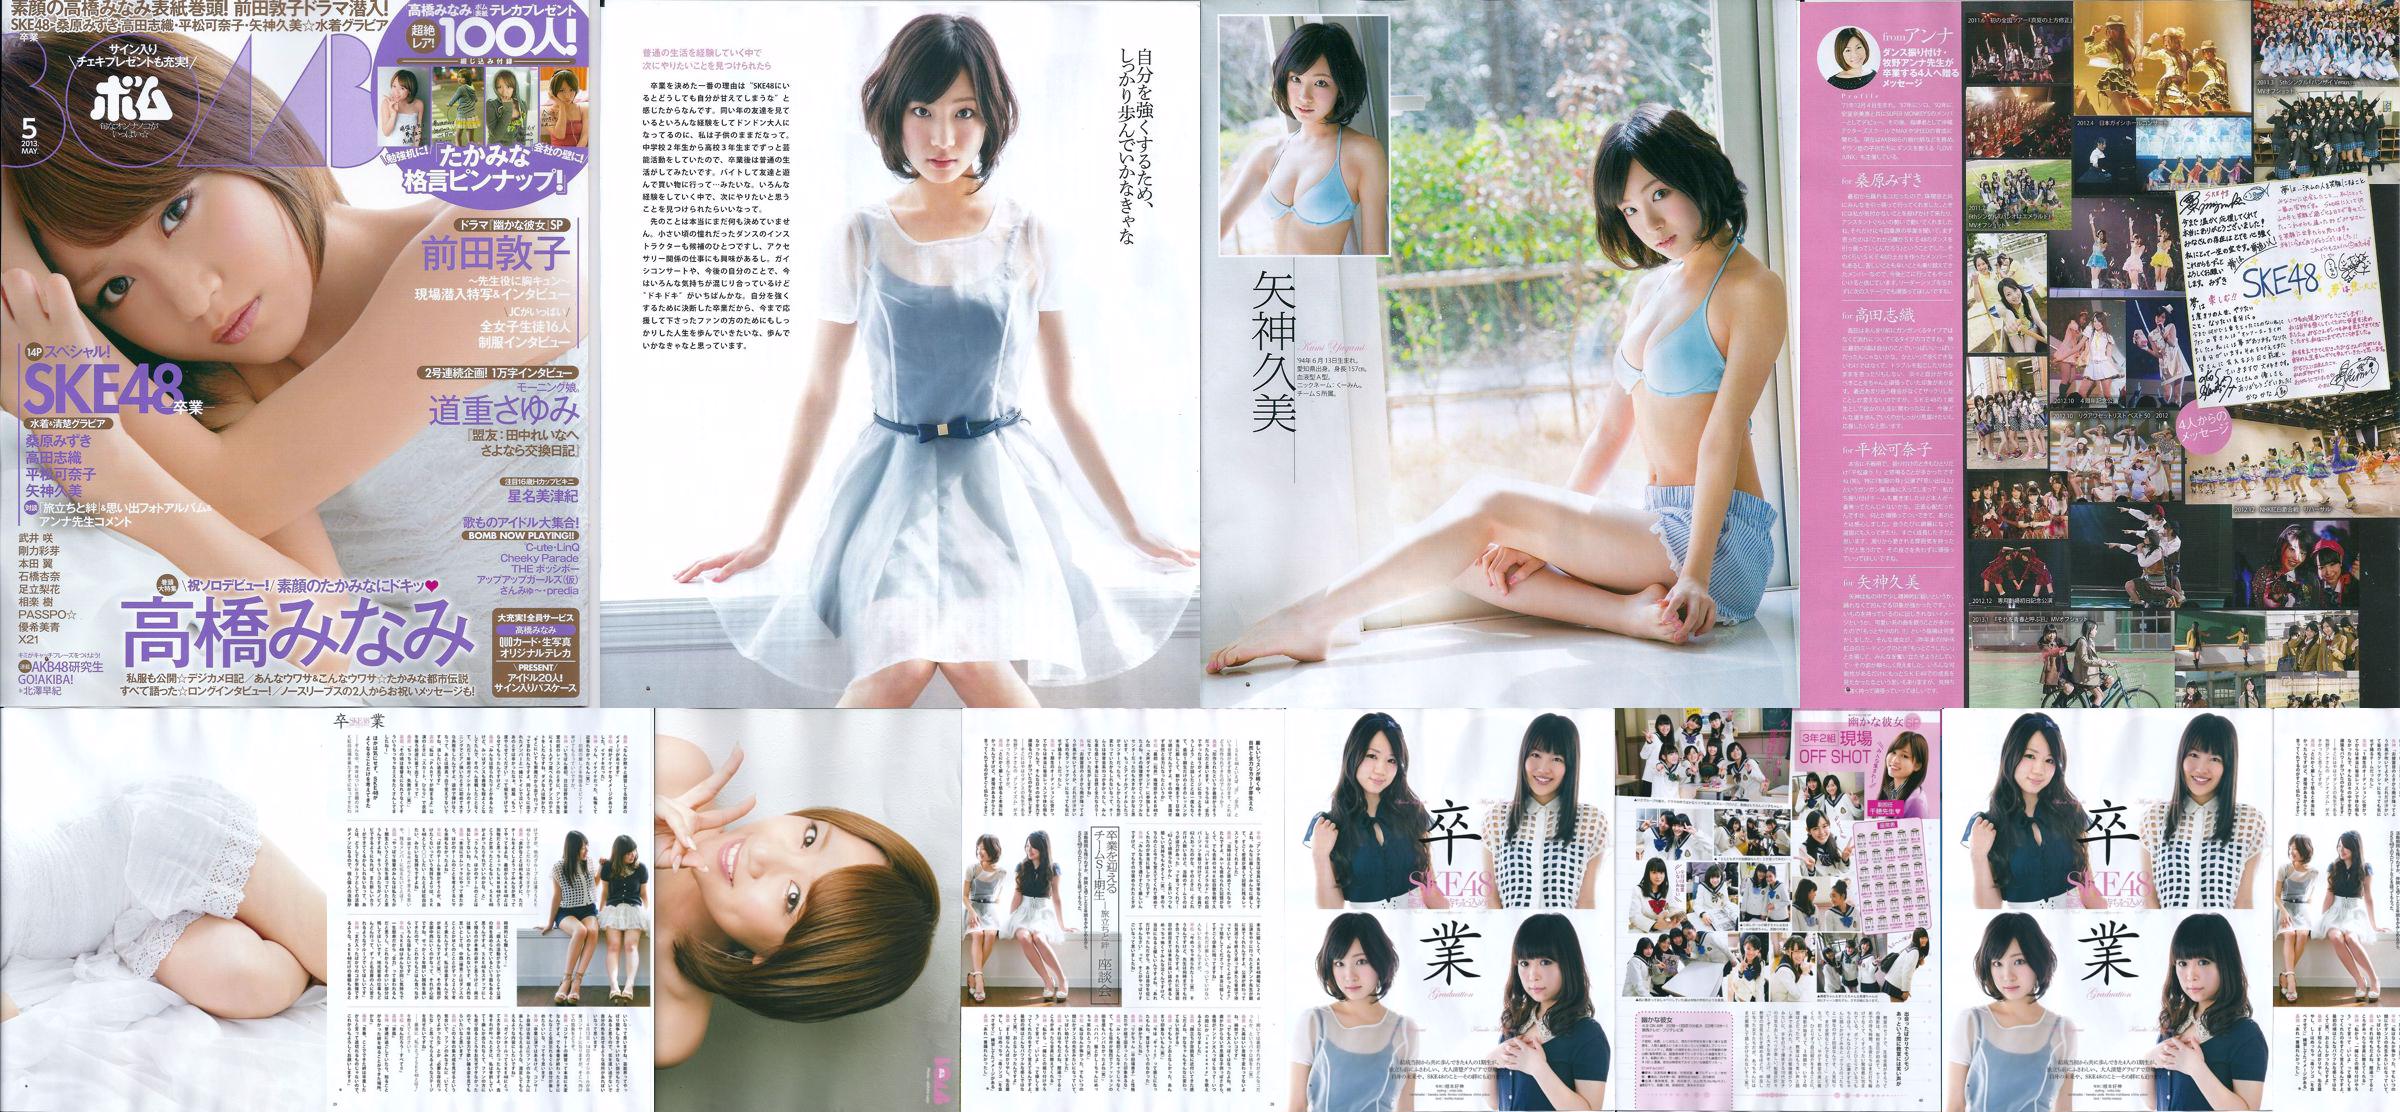 [Bomb Magazine] 2013 No.05 Kumi Yagami Minami Takahashi Atsuko Maeda Foto No.2b0b86 Seite 1